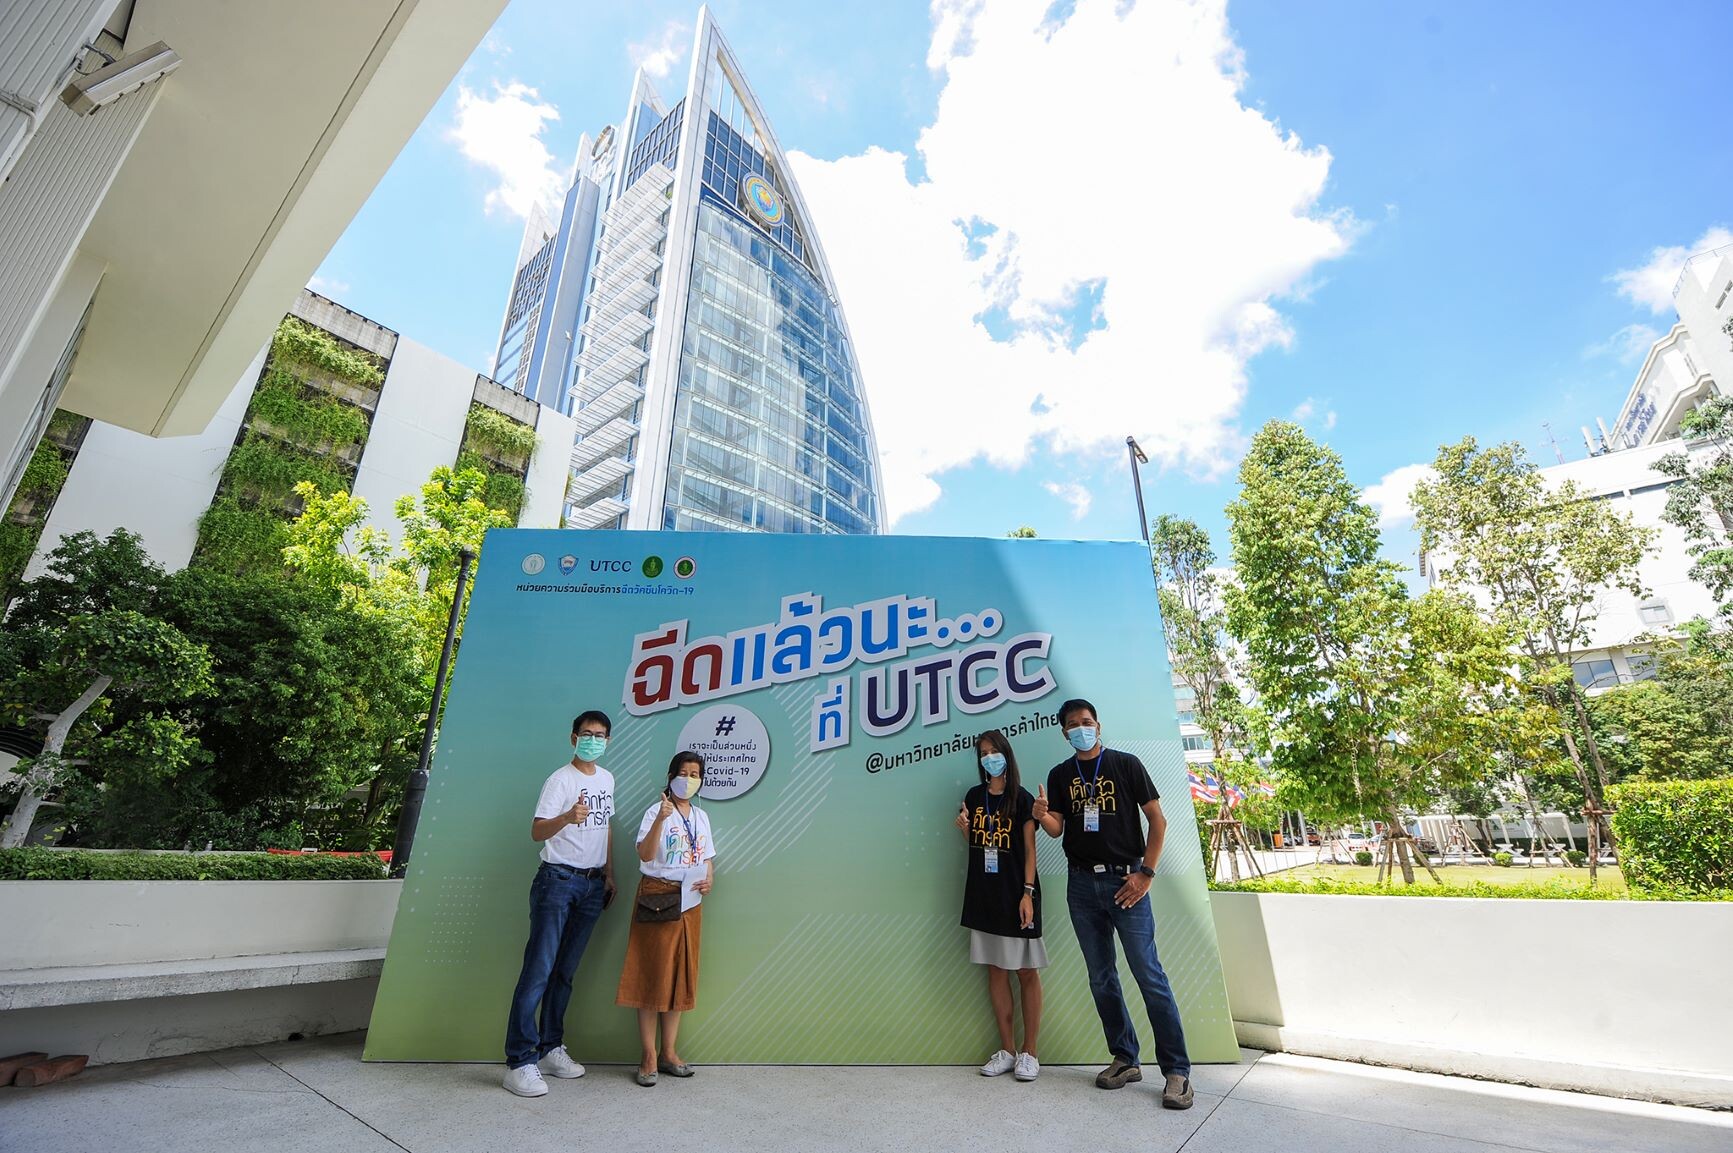 มหาวิทยาลัยหอการค้าไทย ใช้ศาสตร์ความรู้ที่หลากหลายบูรณาการร่วมกัน เป็นสนามศูนย์ฉีควัคซีน โควิด19